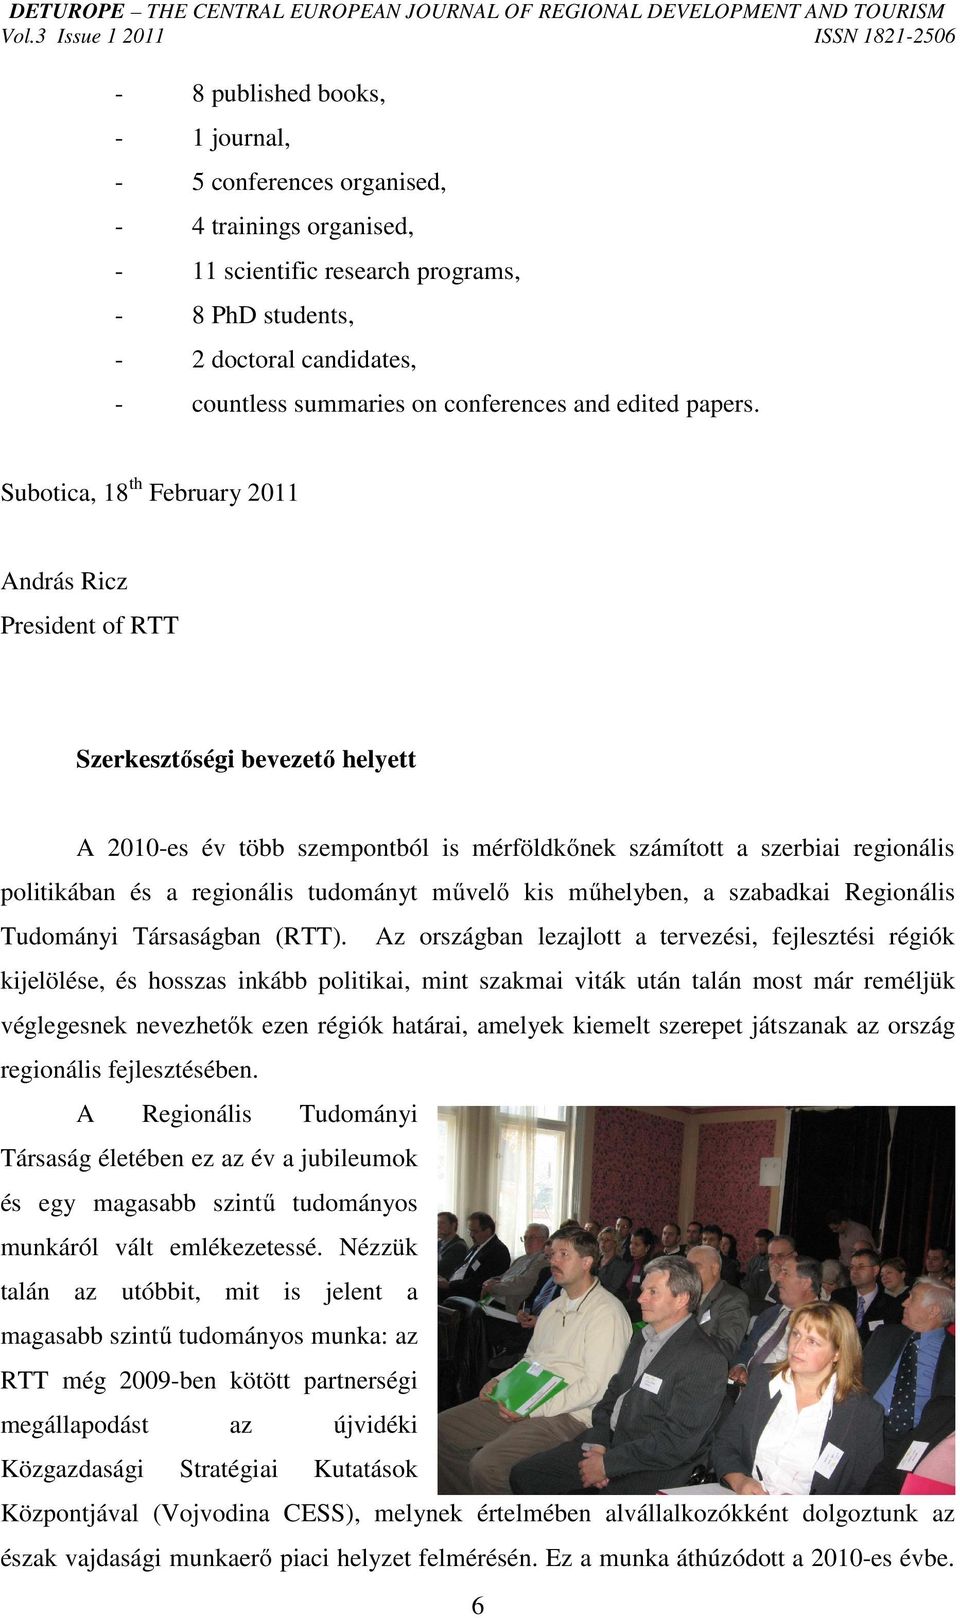 Subotica, 18 th February 2011 András Ricz President of RTT Szerkesztőségi bevezető helyett A 2010-es év több szempontból is mérföldkőnek számított a szerbiai regionális politikában és a regionális